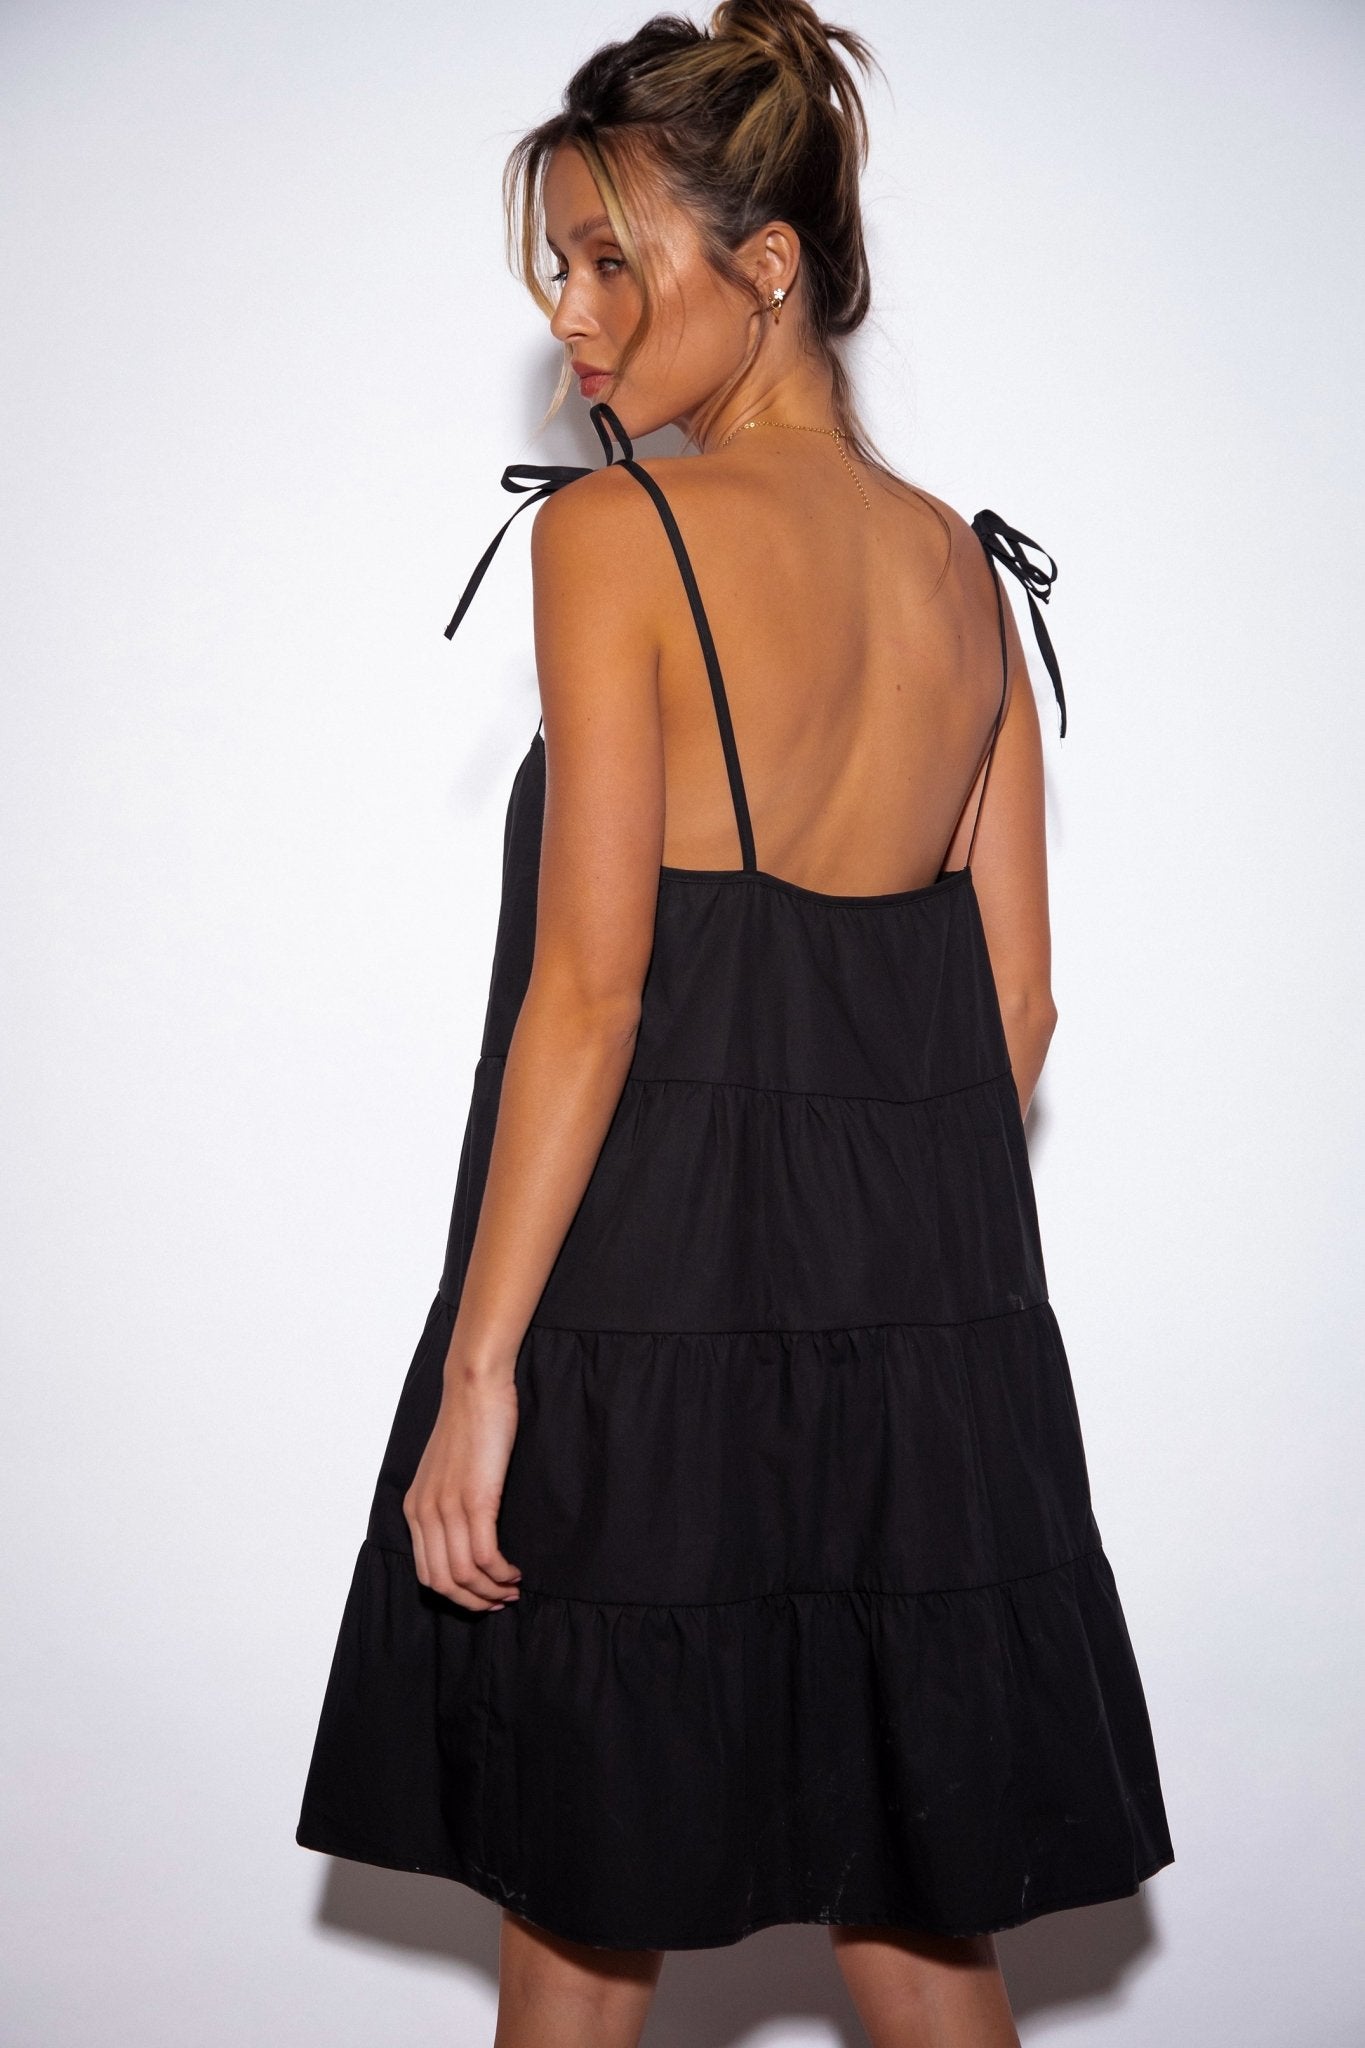 SNDYS St Tropez Mini Dress in Black - Hey Sara